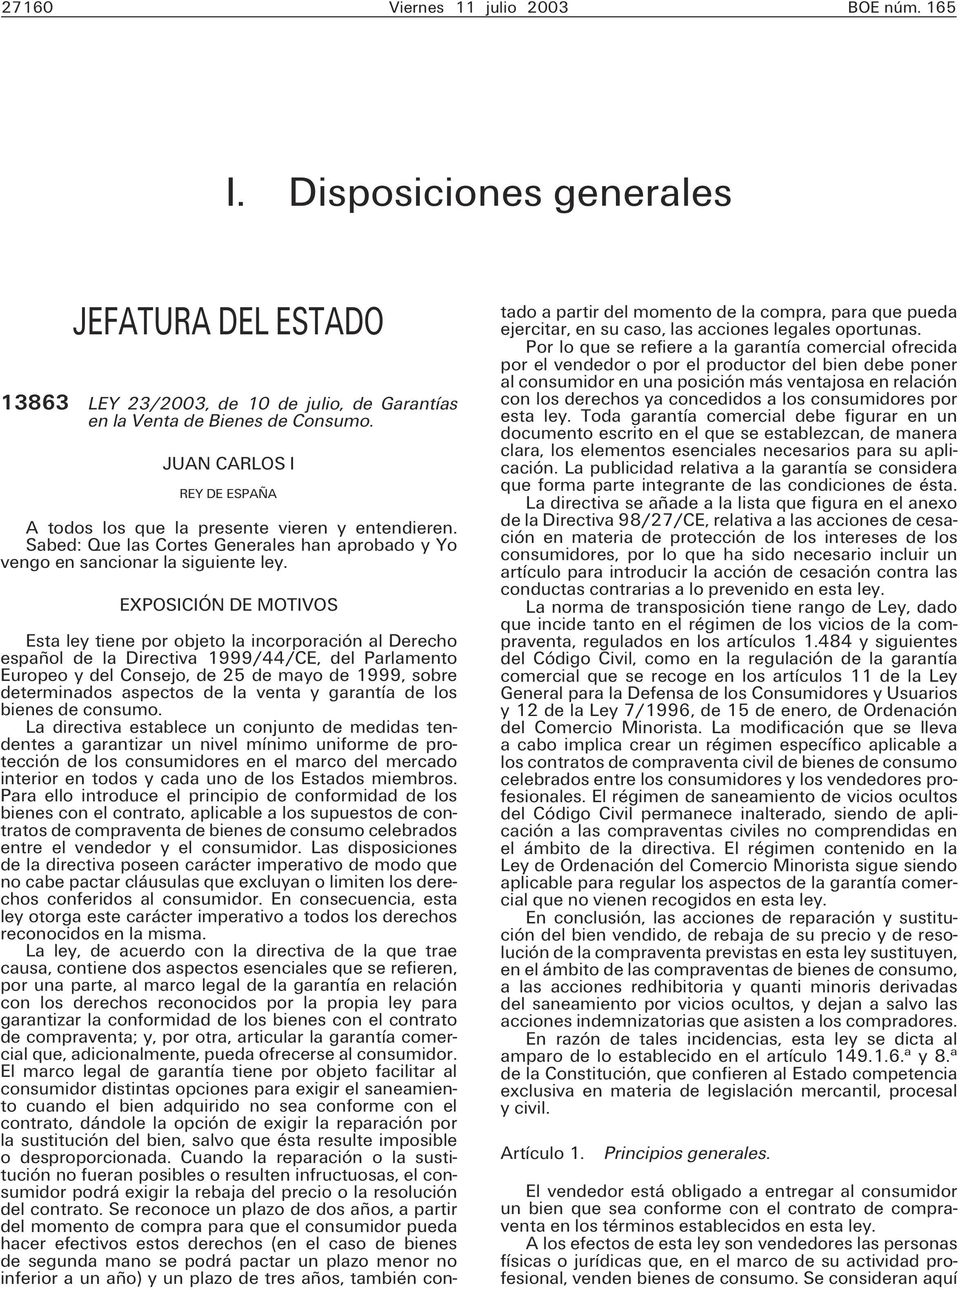 EXPOSICIÓN DE MOTIVOS Esta ley tiene por objeto la incorporación al Derecho español de la Directiva 1999/44/CE, del Parlamento Europeo y del Consejo, de 25 de mayo de 1999, sobre determinados